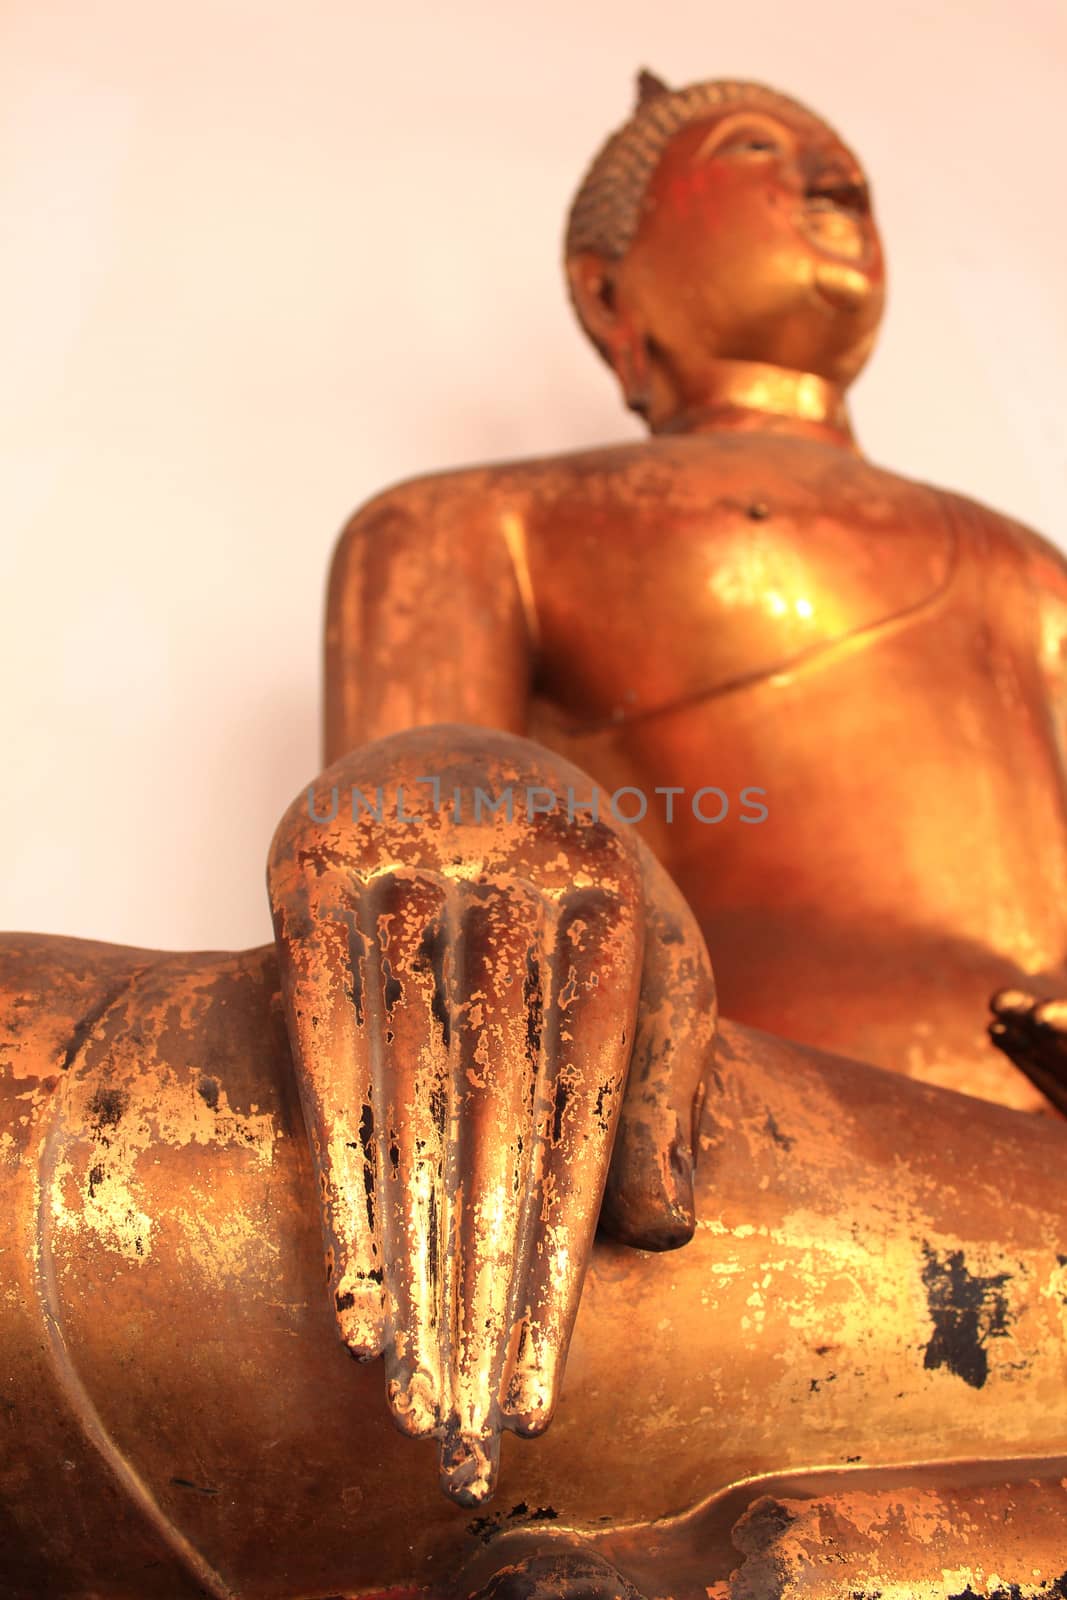 Golden images of Buddha at Wat Pho, Bangkok